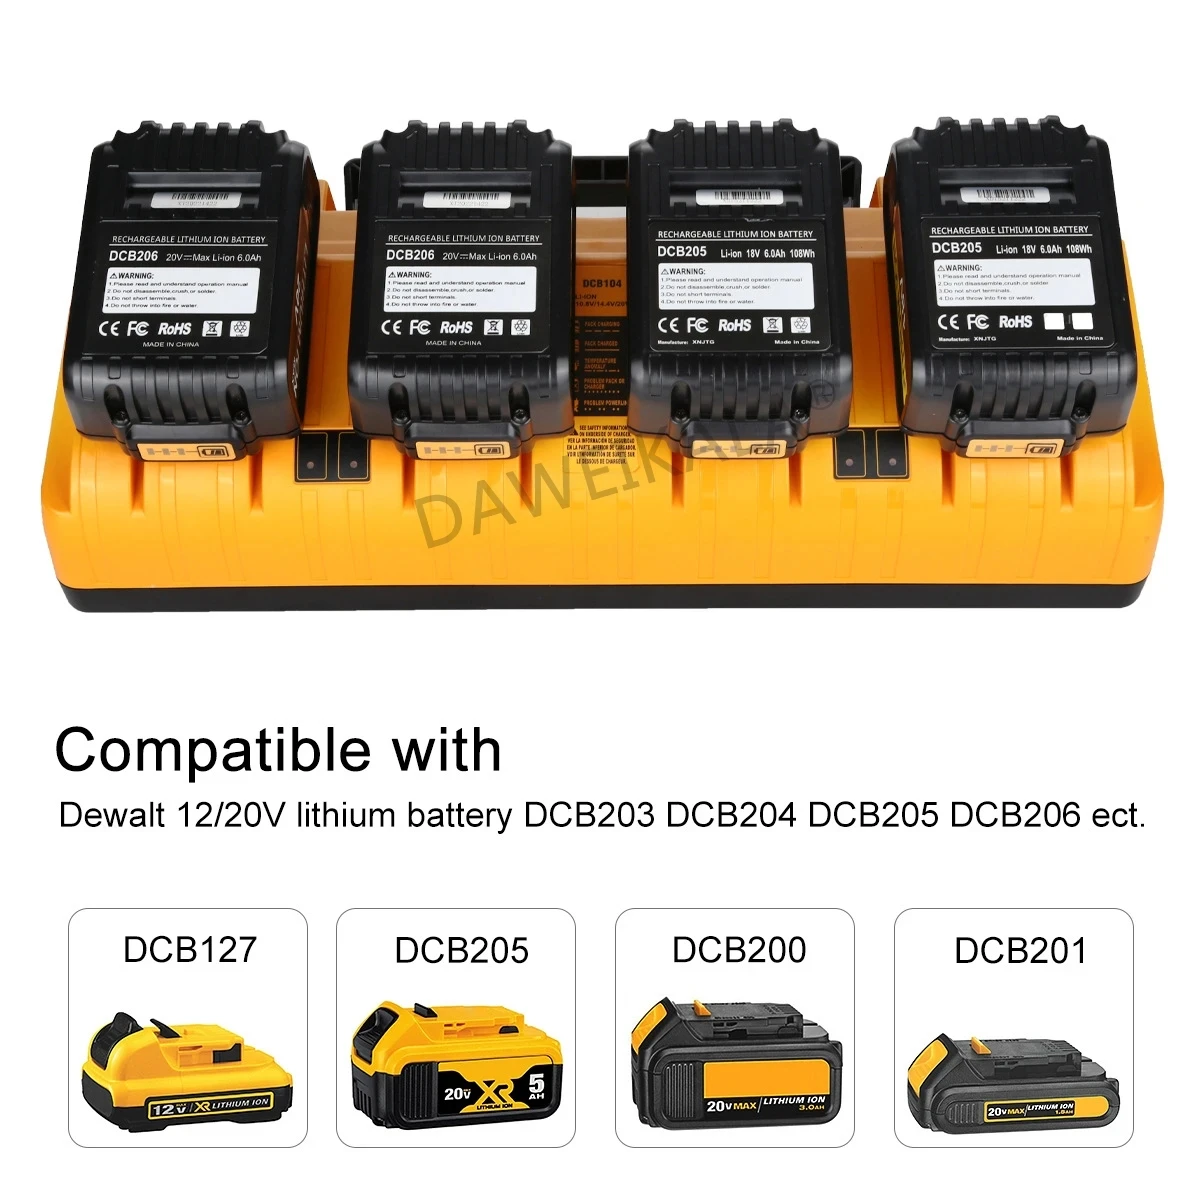 

Dewalt 14.4V 18V 20V Lithium Battery Charger DCB203 DC B204 DCB205 DCB206 Li-Ion Battery DCB118 DCB1418 DCB140 DCB183 DCB200